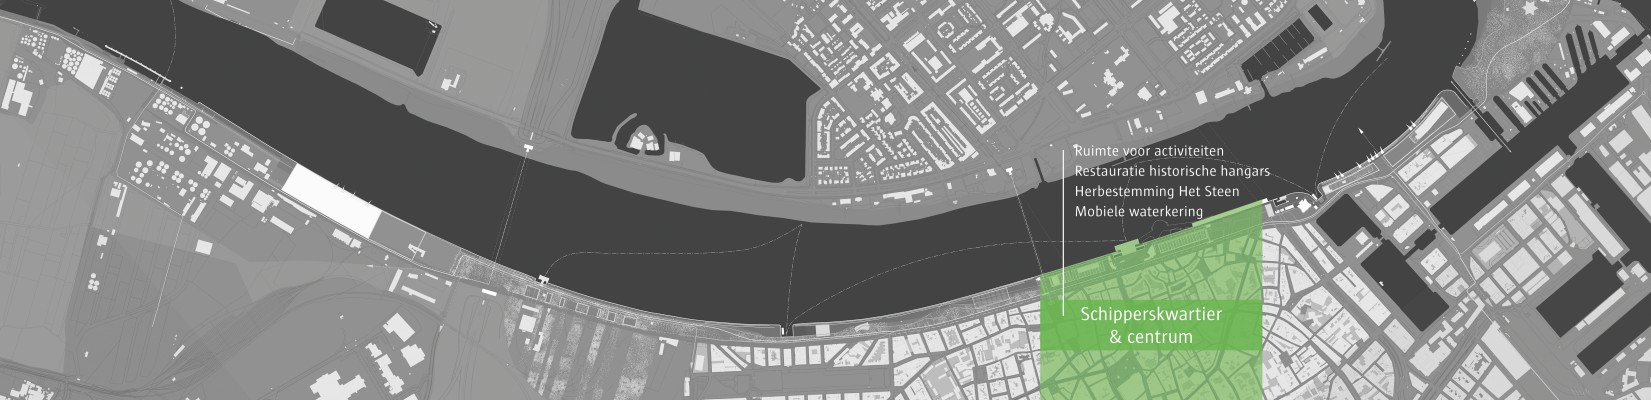 Een luchtbeeld van het plan van het deelgebied Schipperskwartier en Centrum van de Scheldekaaien